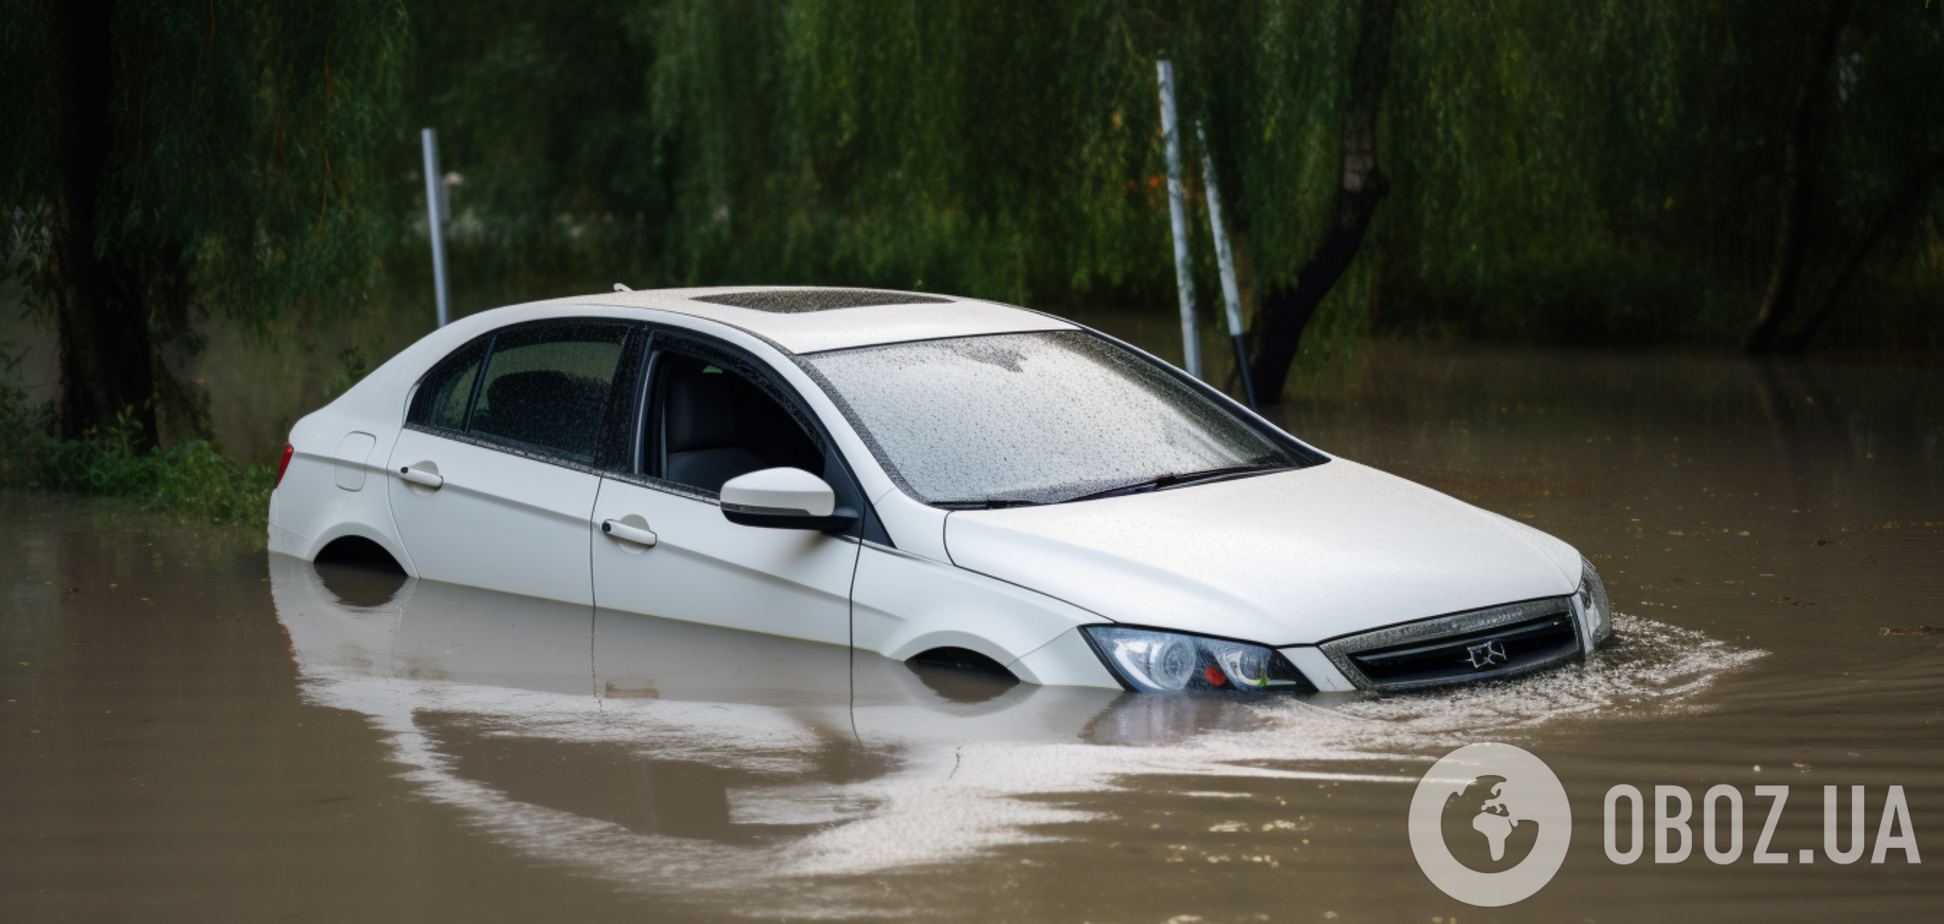 Что делать, если ваше авто затонуло: как быстро спастись из-под воды